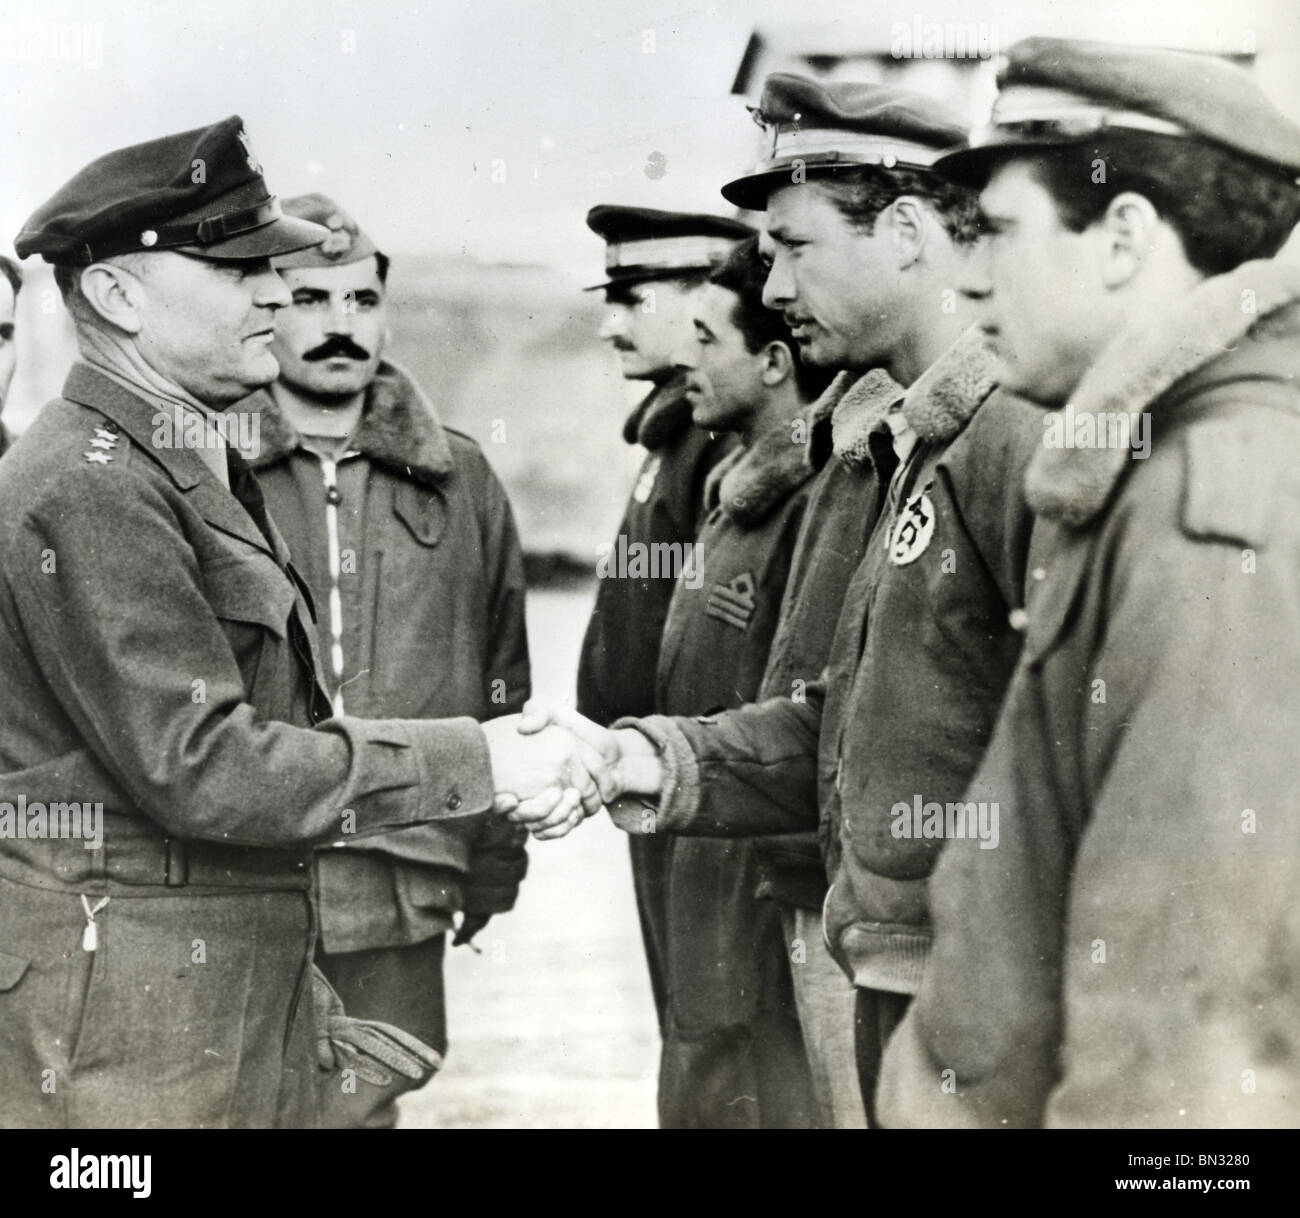 C GENBERAL IRA EAKER rencontre des membres d'un équipage de bombardiers B29 en 1943 Banque D'Images